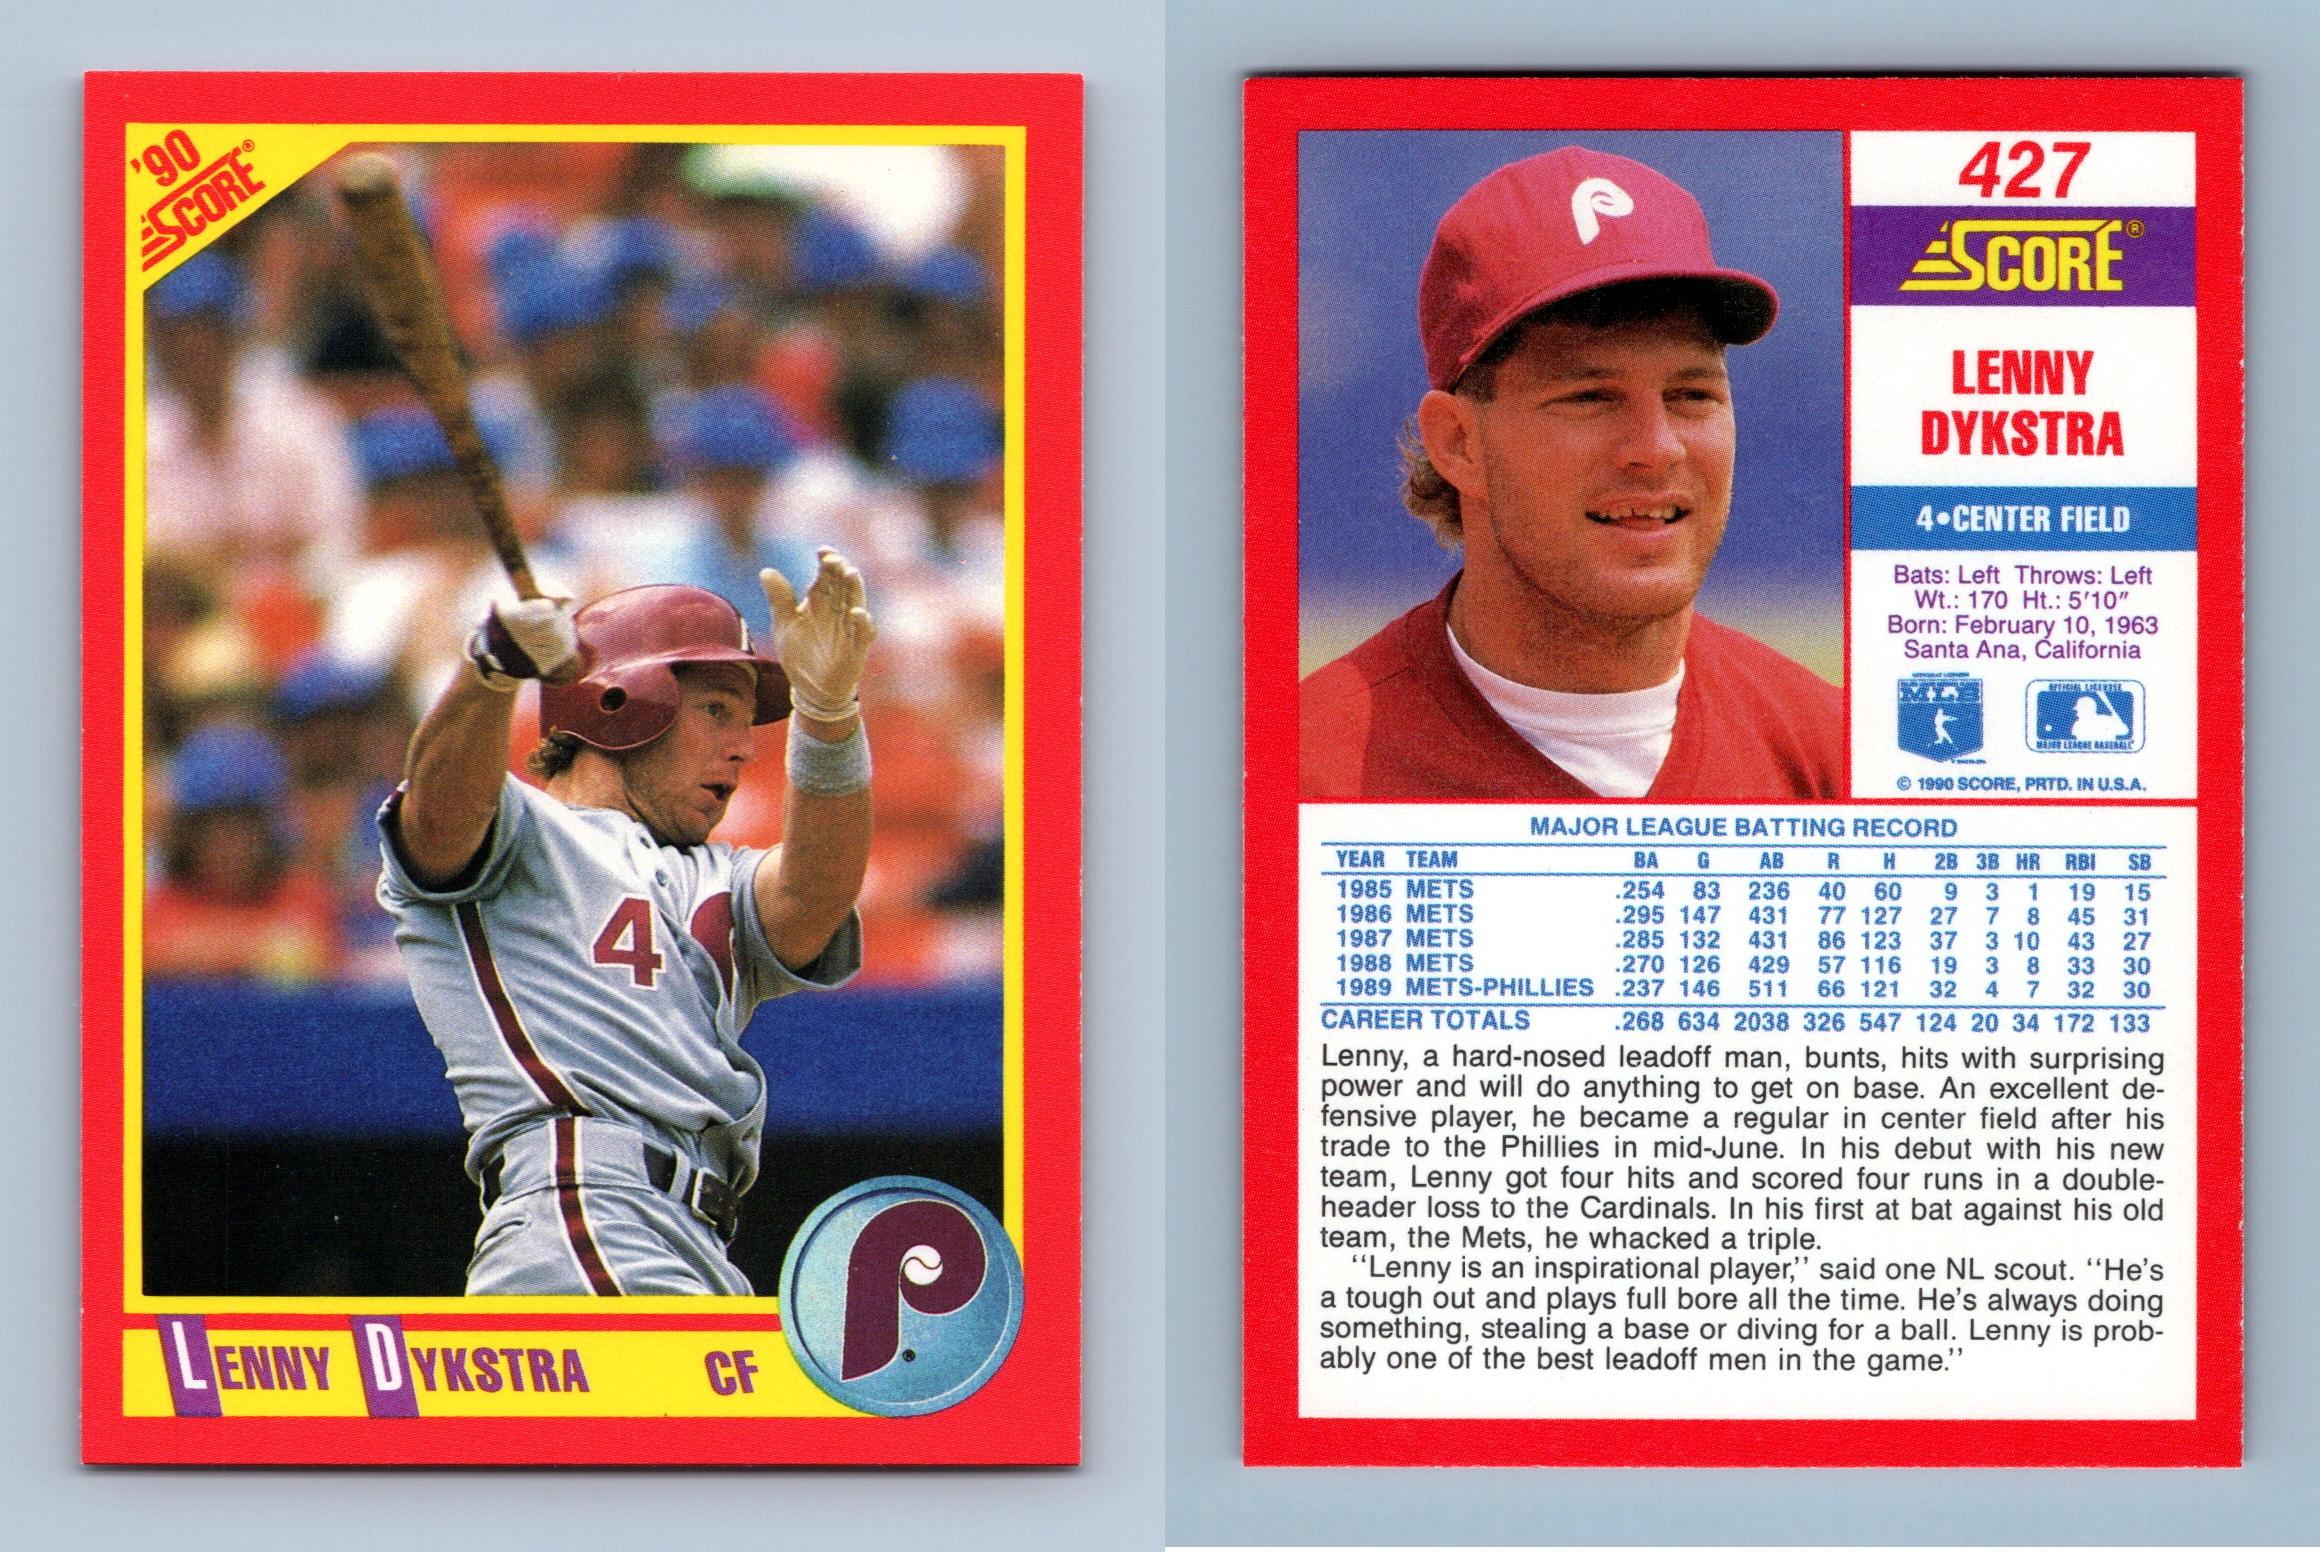 Lenny Dykstra - Phillies #427 Score 1990 Baseball Trading Card